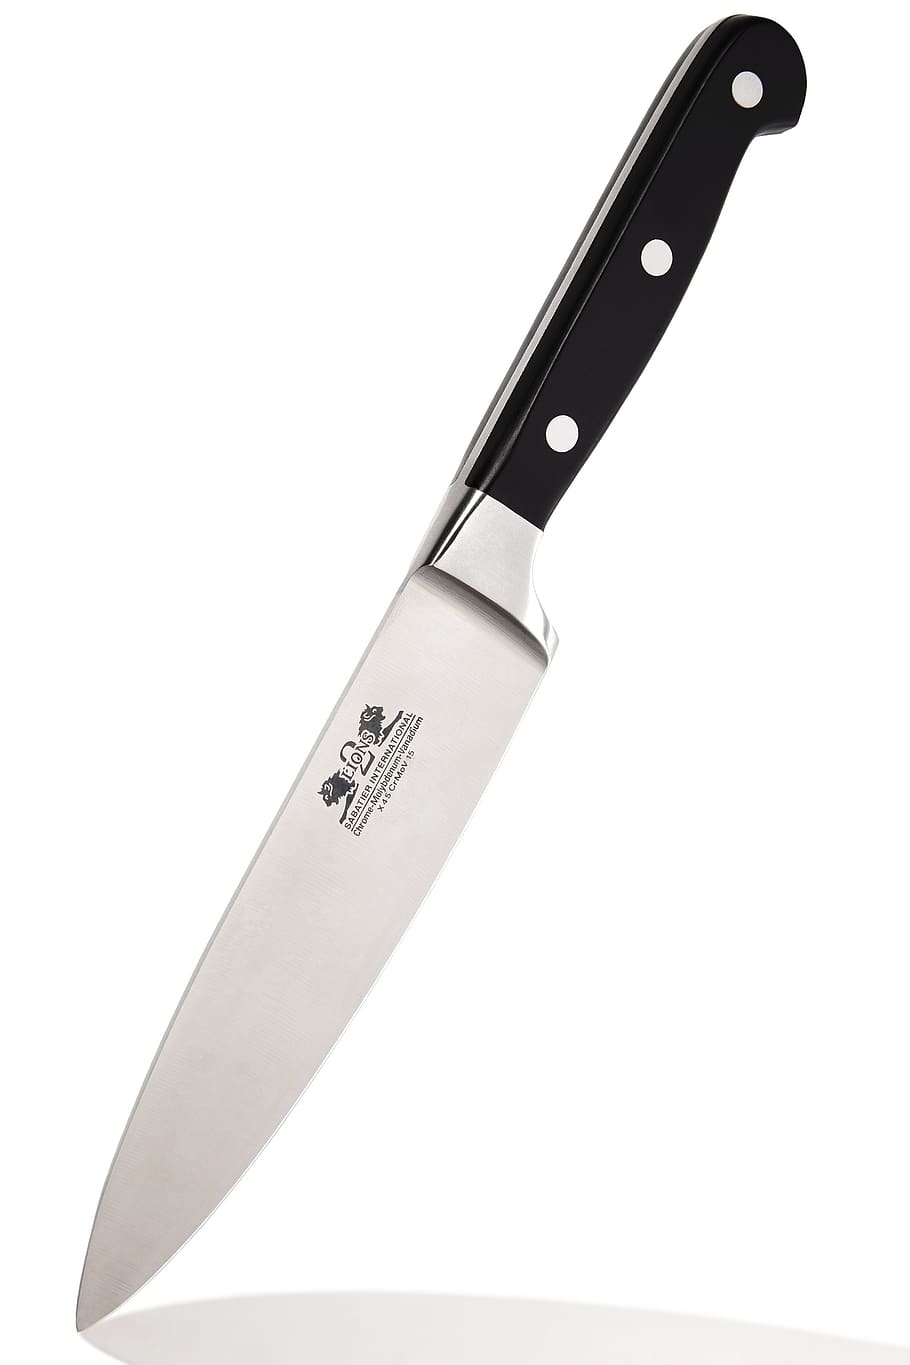 faca de cozinheiros, faca de chefs, sabatier, cozinha, facas, chef, lidar com, costeleta, lâmina, corte